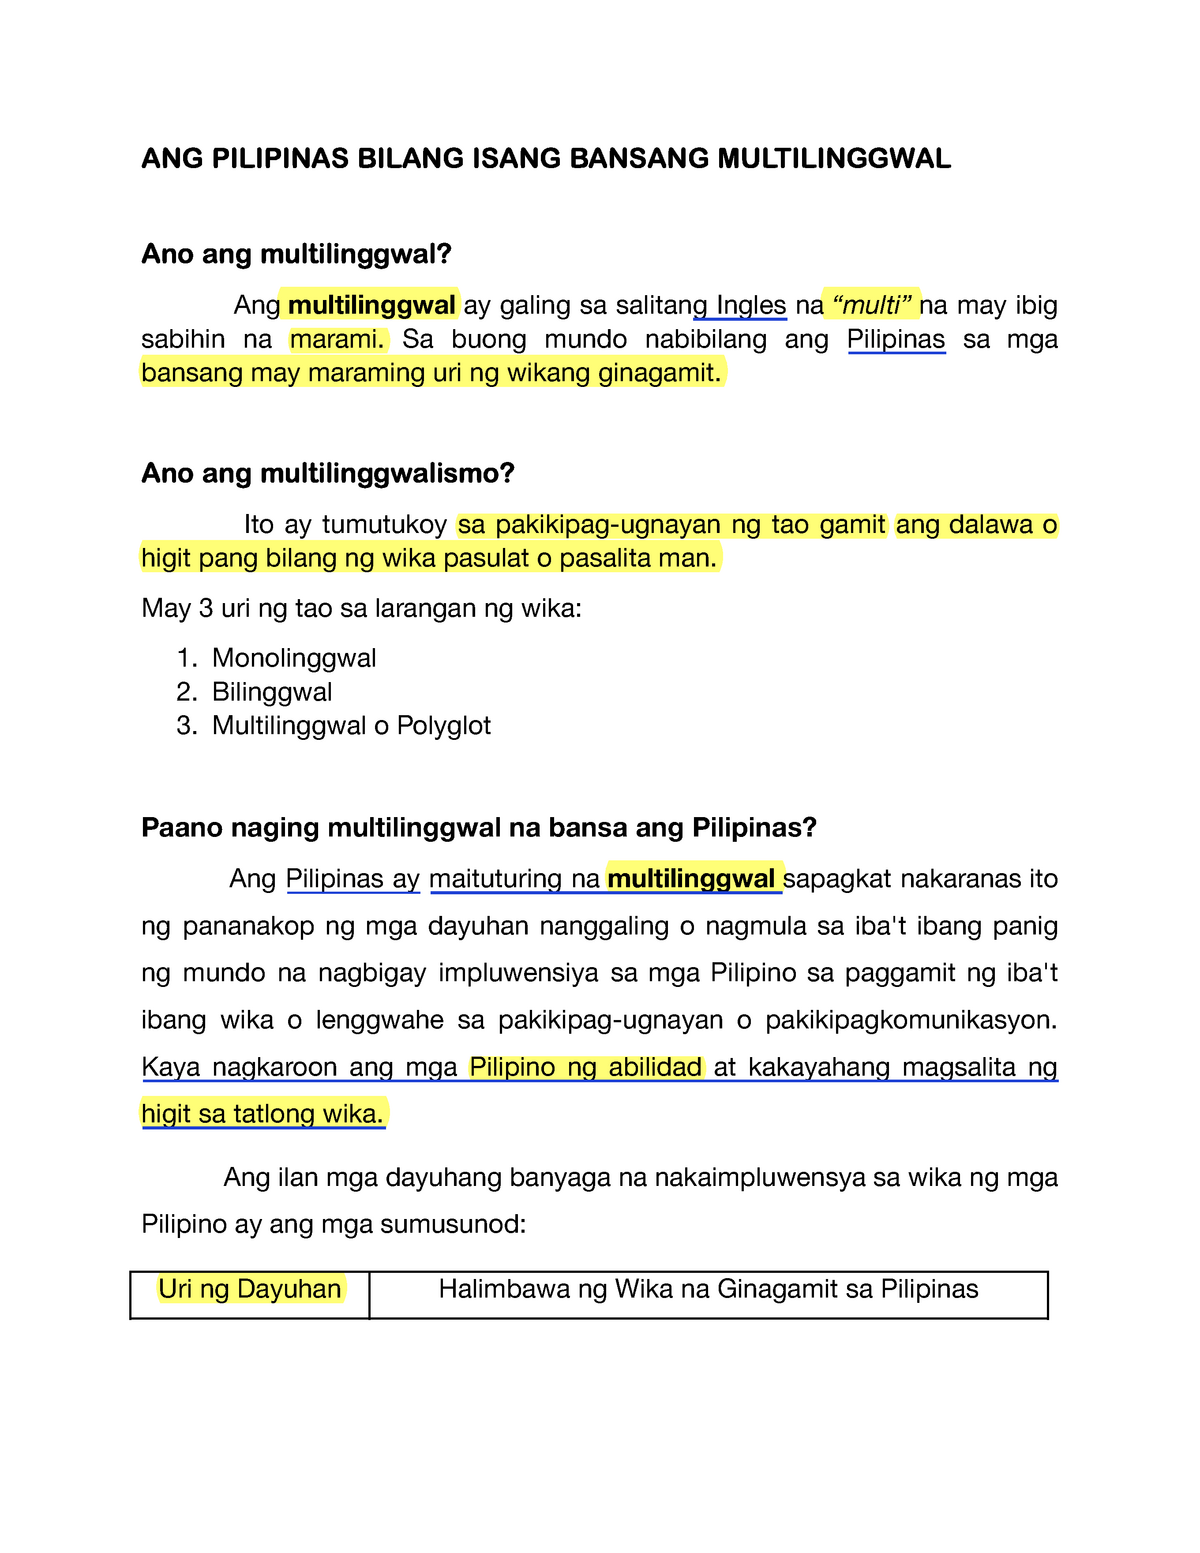 ANG Pilipinas Bilang Isang Bansang Multilinggwal - Filipino sa piling